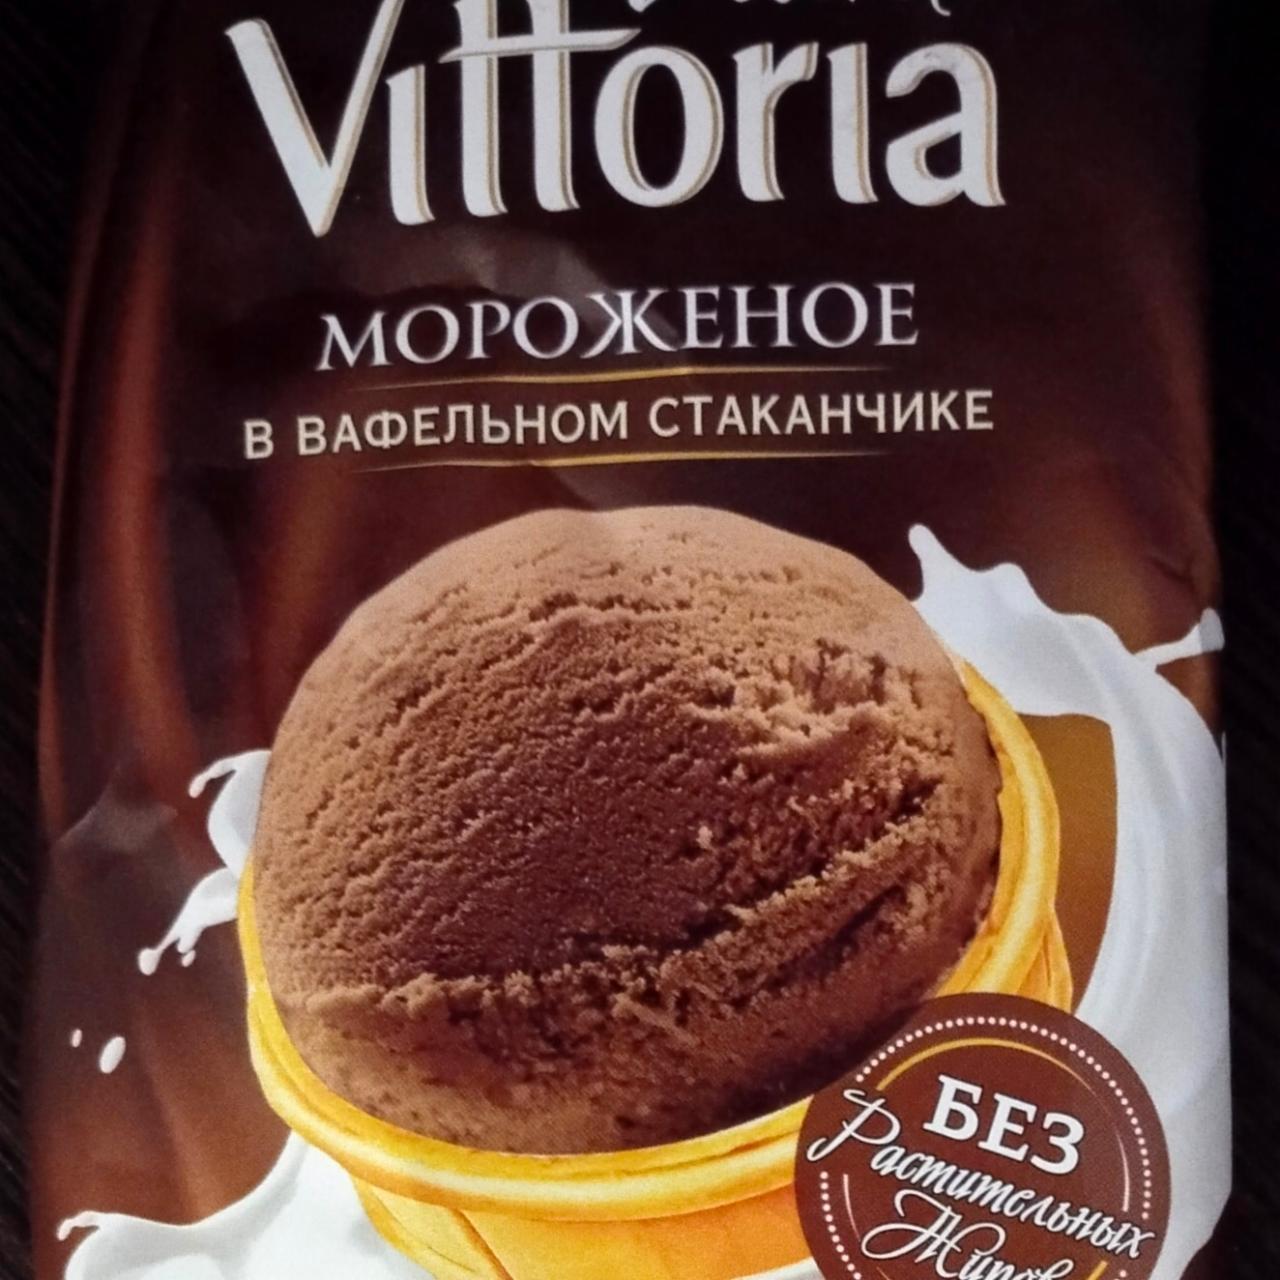 Фото - Viante мороженое в вафельном стаканчике Пломбир шоколадный Vittoria